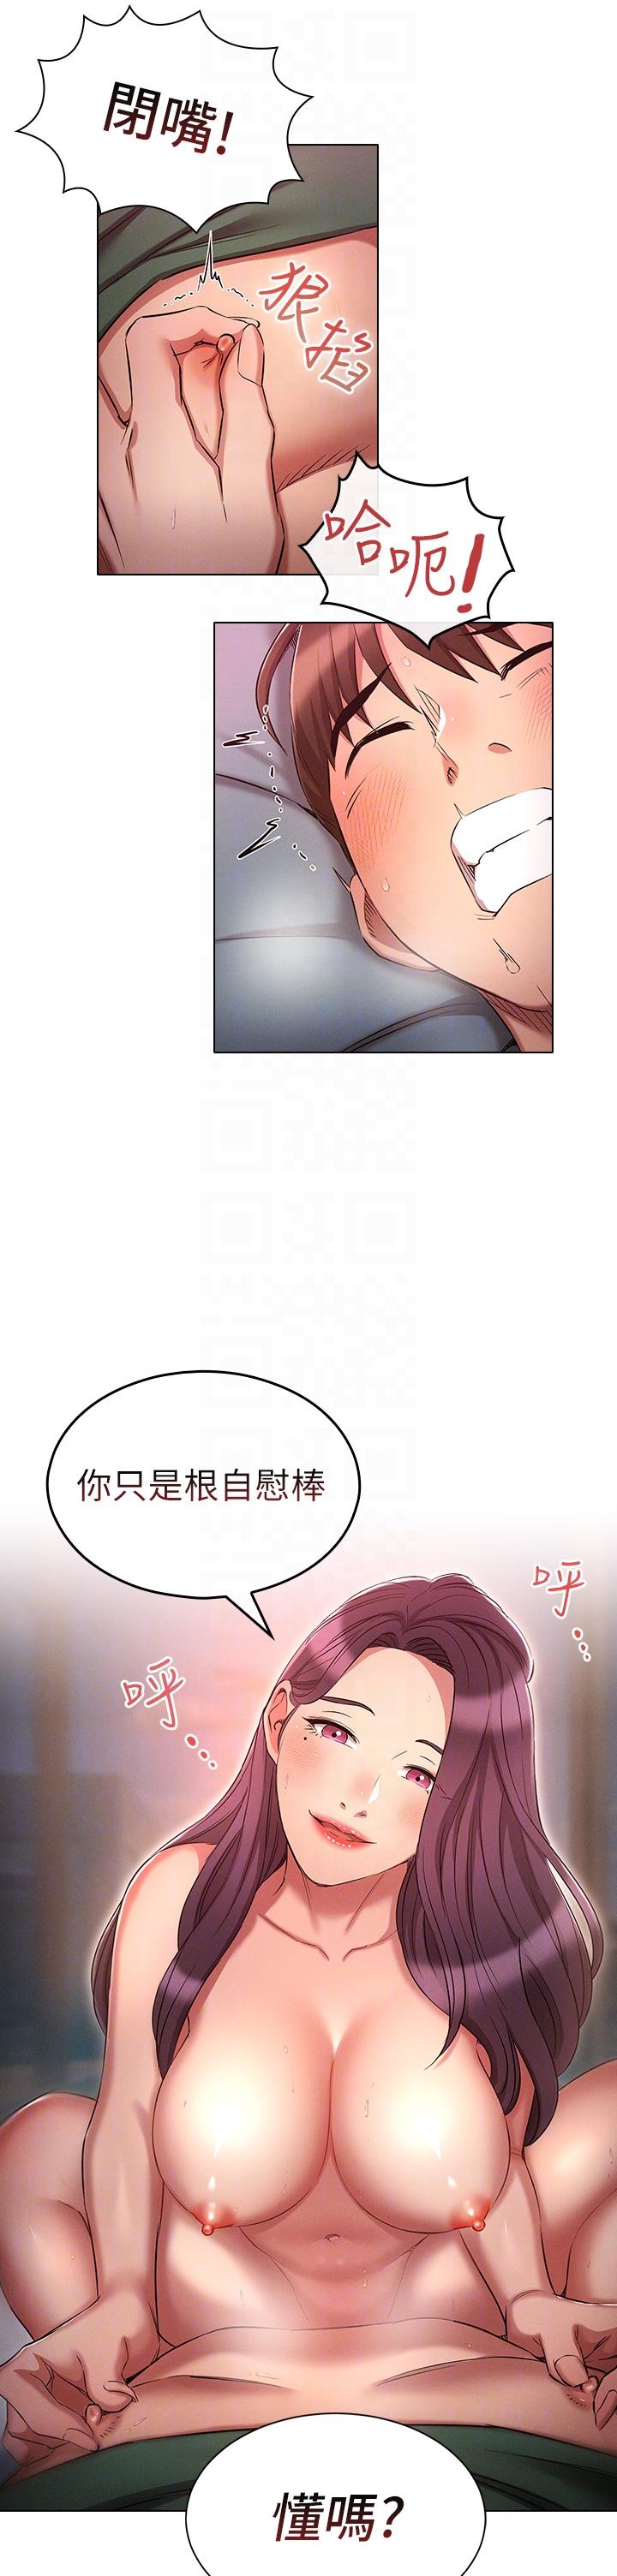 韩国污漫画 魯蛇的多重宇宙 第23话-乖乖当我的自慰棒 18